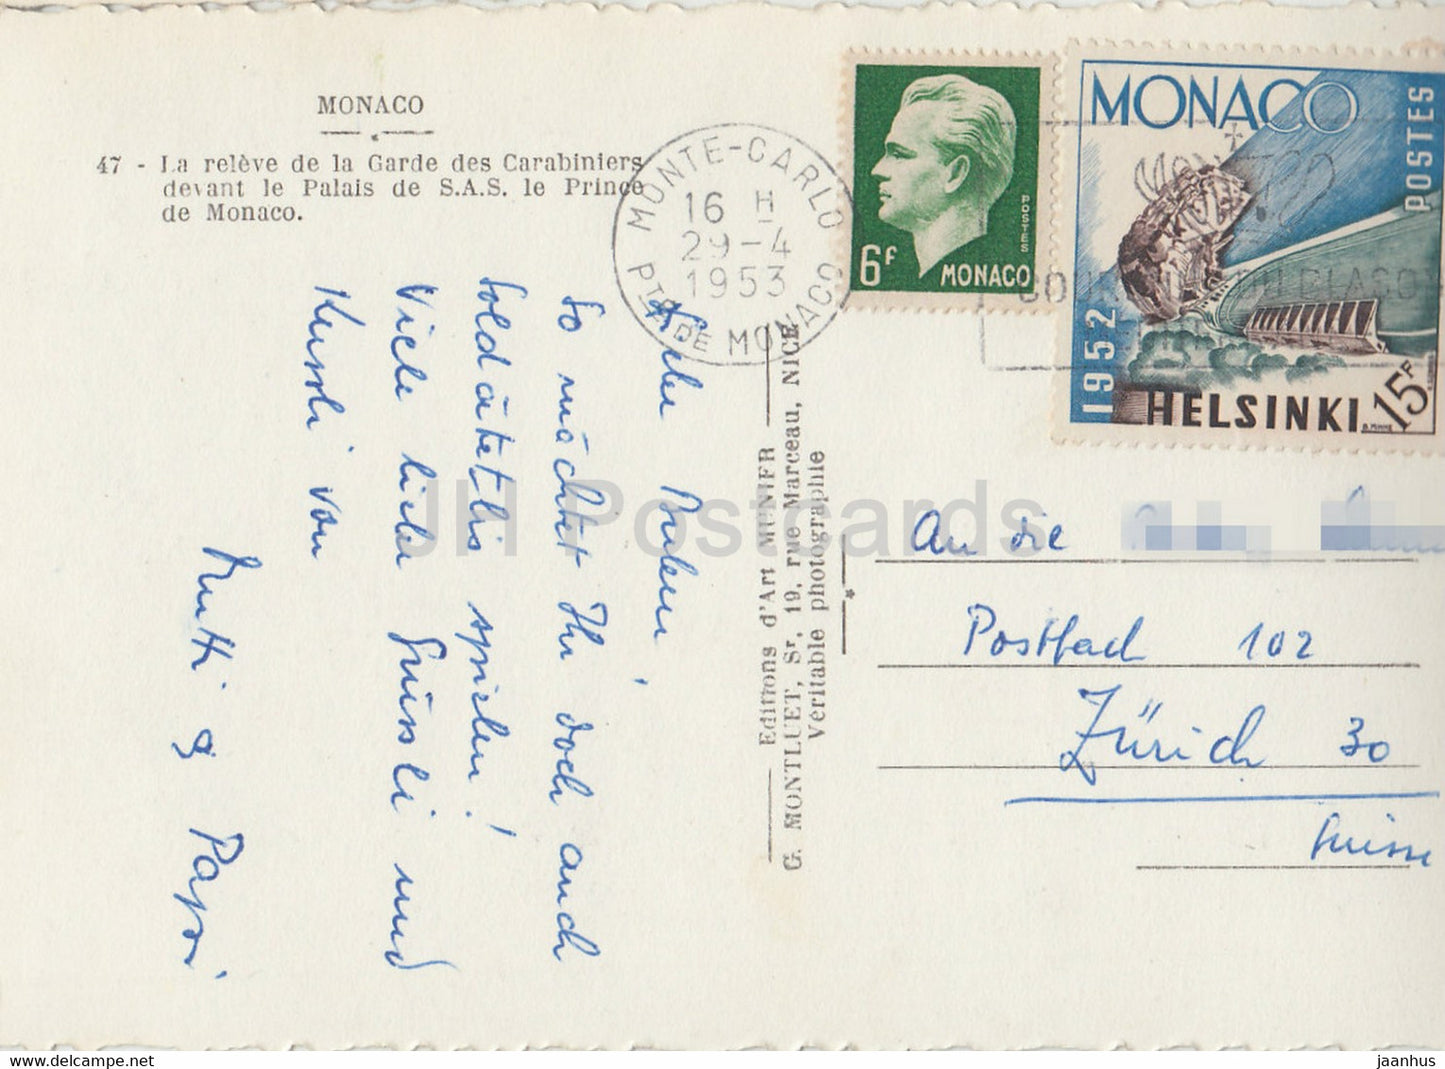 La releve de la Garde des Carabiniers devant le Palais de SAS le Prince de Monaco – alte Postkarte – 1953 – Monaco – gebraucht